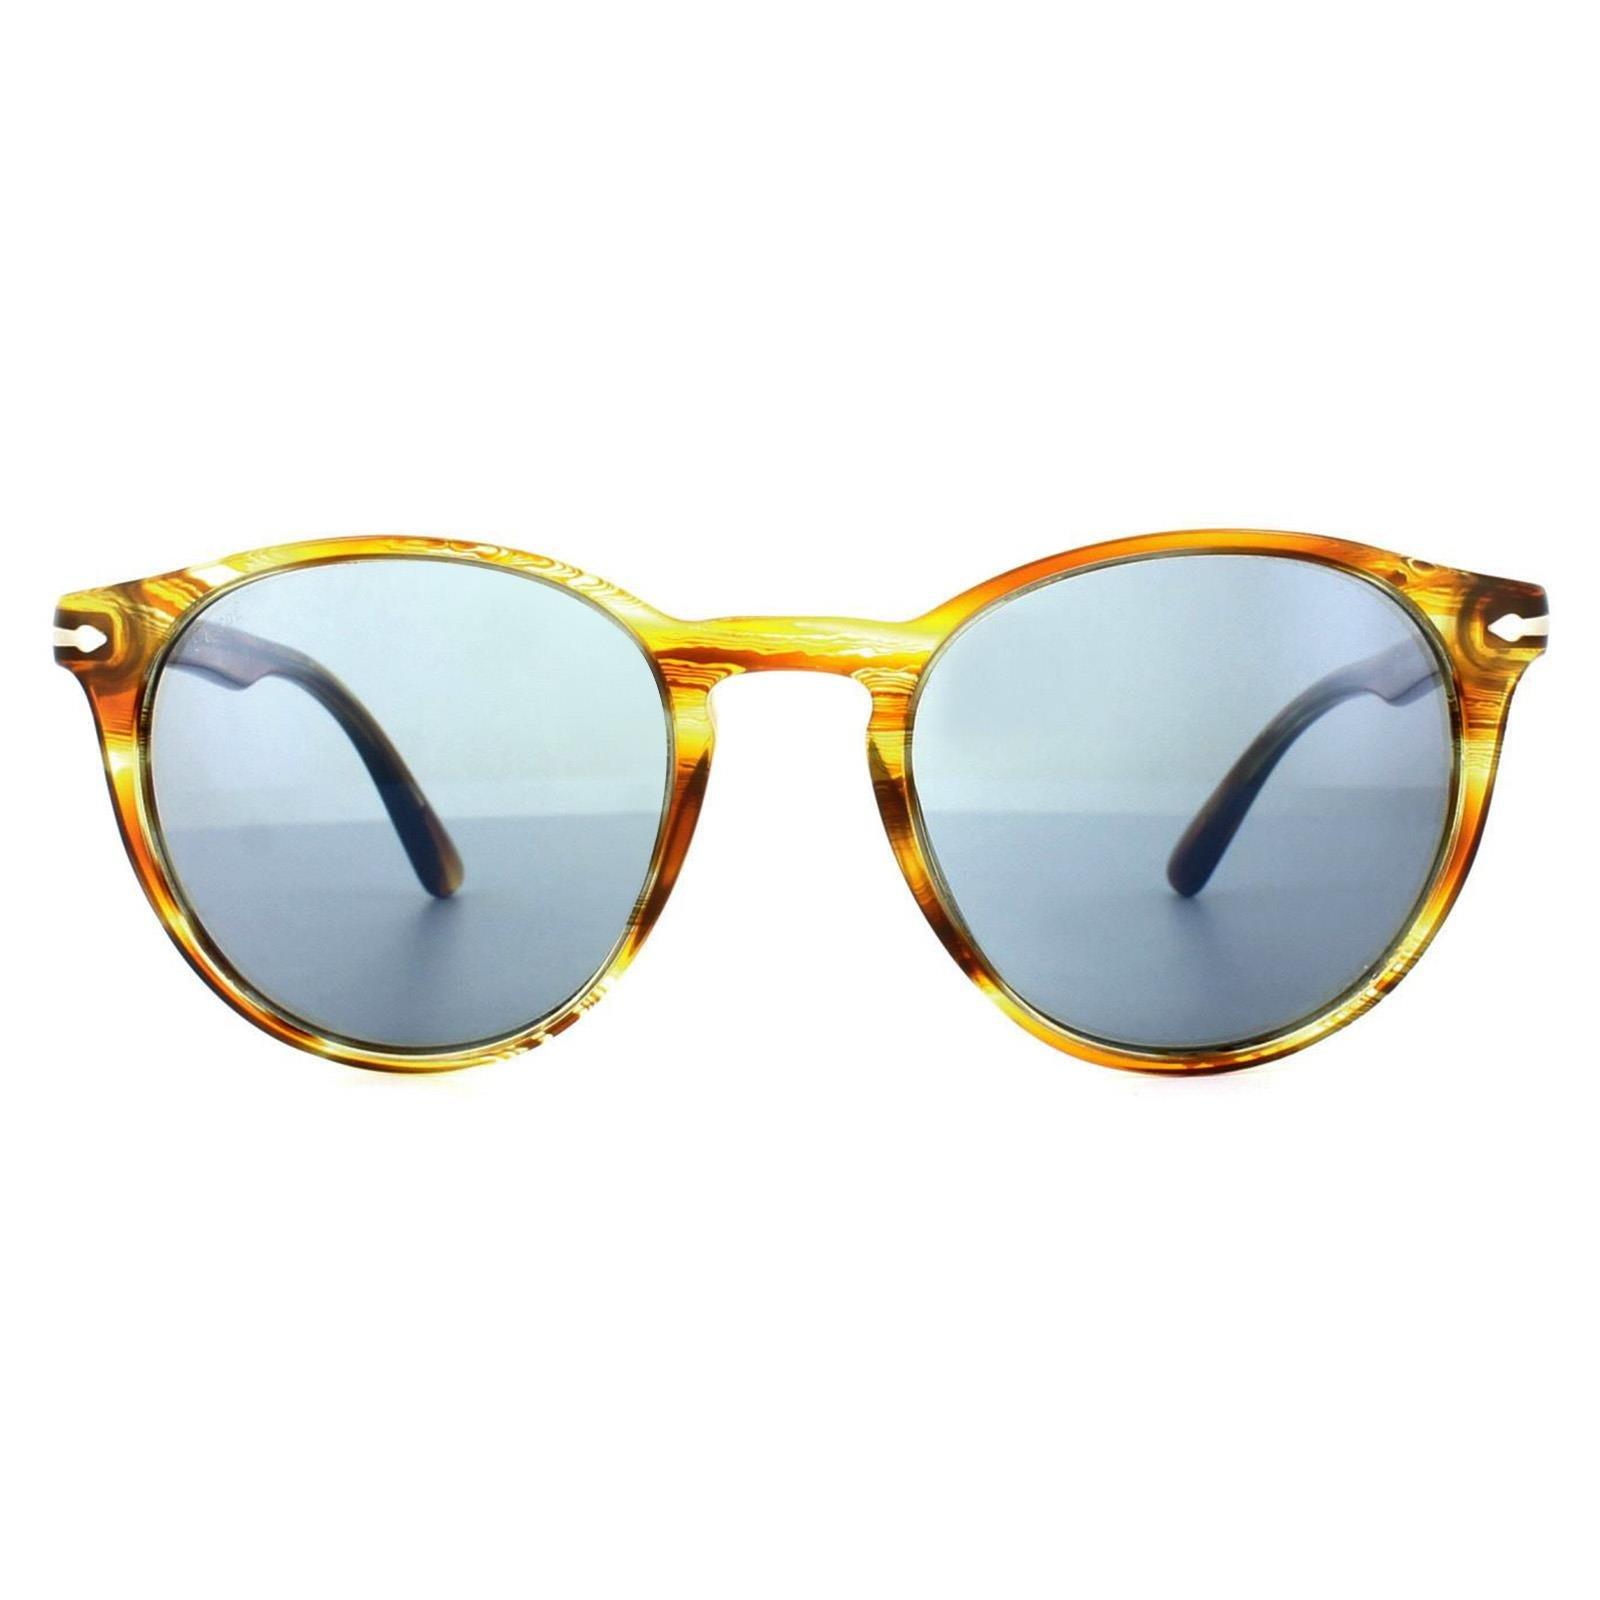 Круглые солнцезащитные очки с желтым и синим антибликовым покрытием в коричневую полоску Persol, коричневый кегли 1 8 элементов 9043 562766